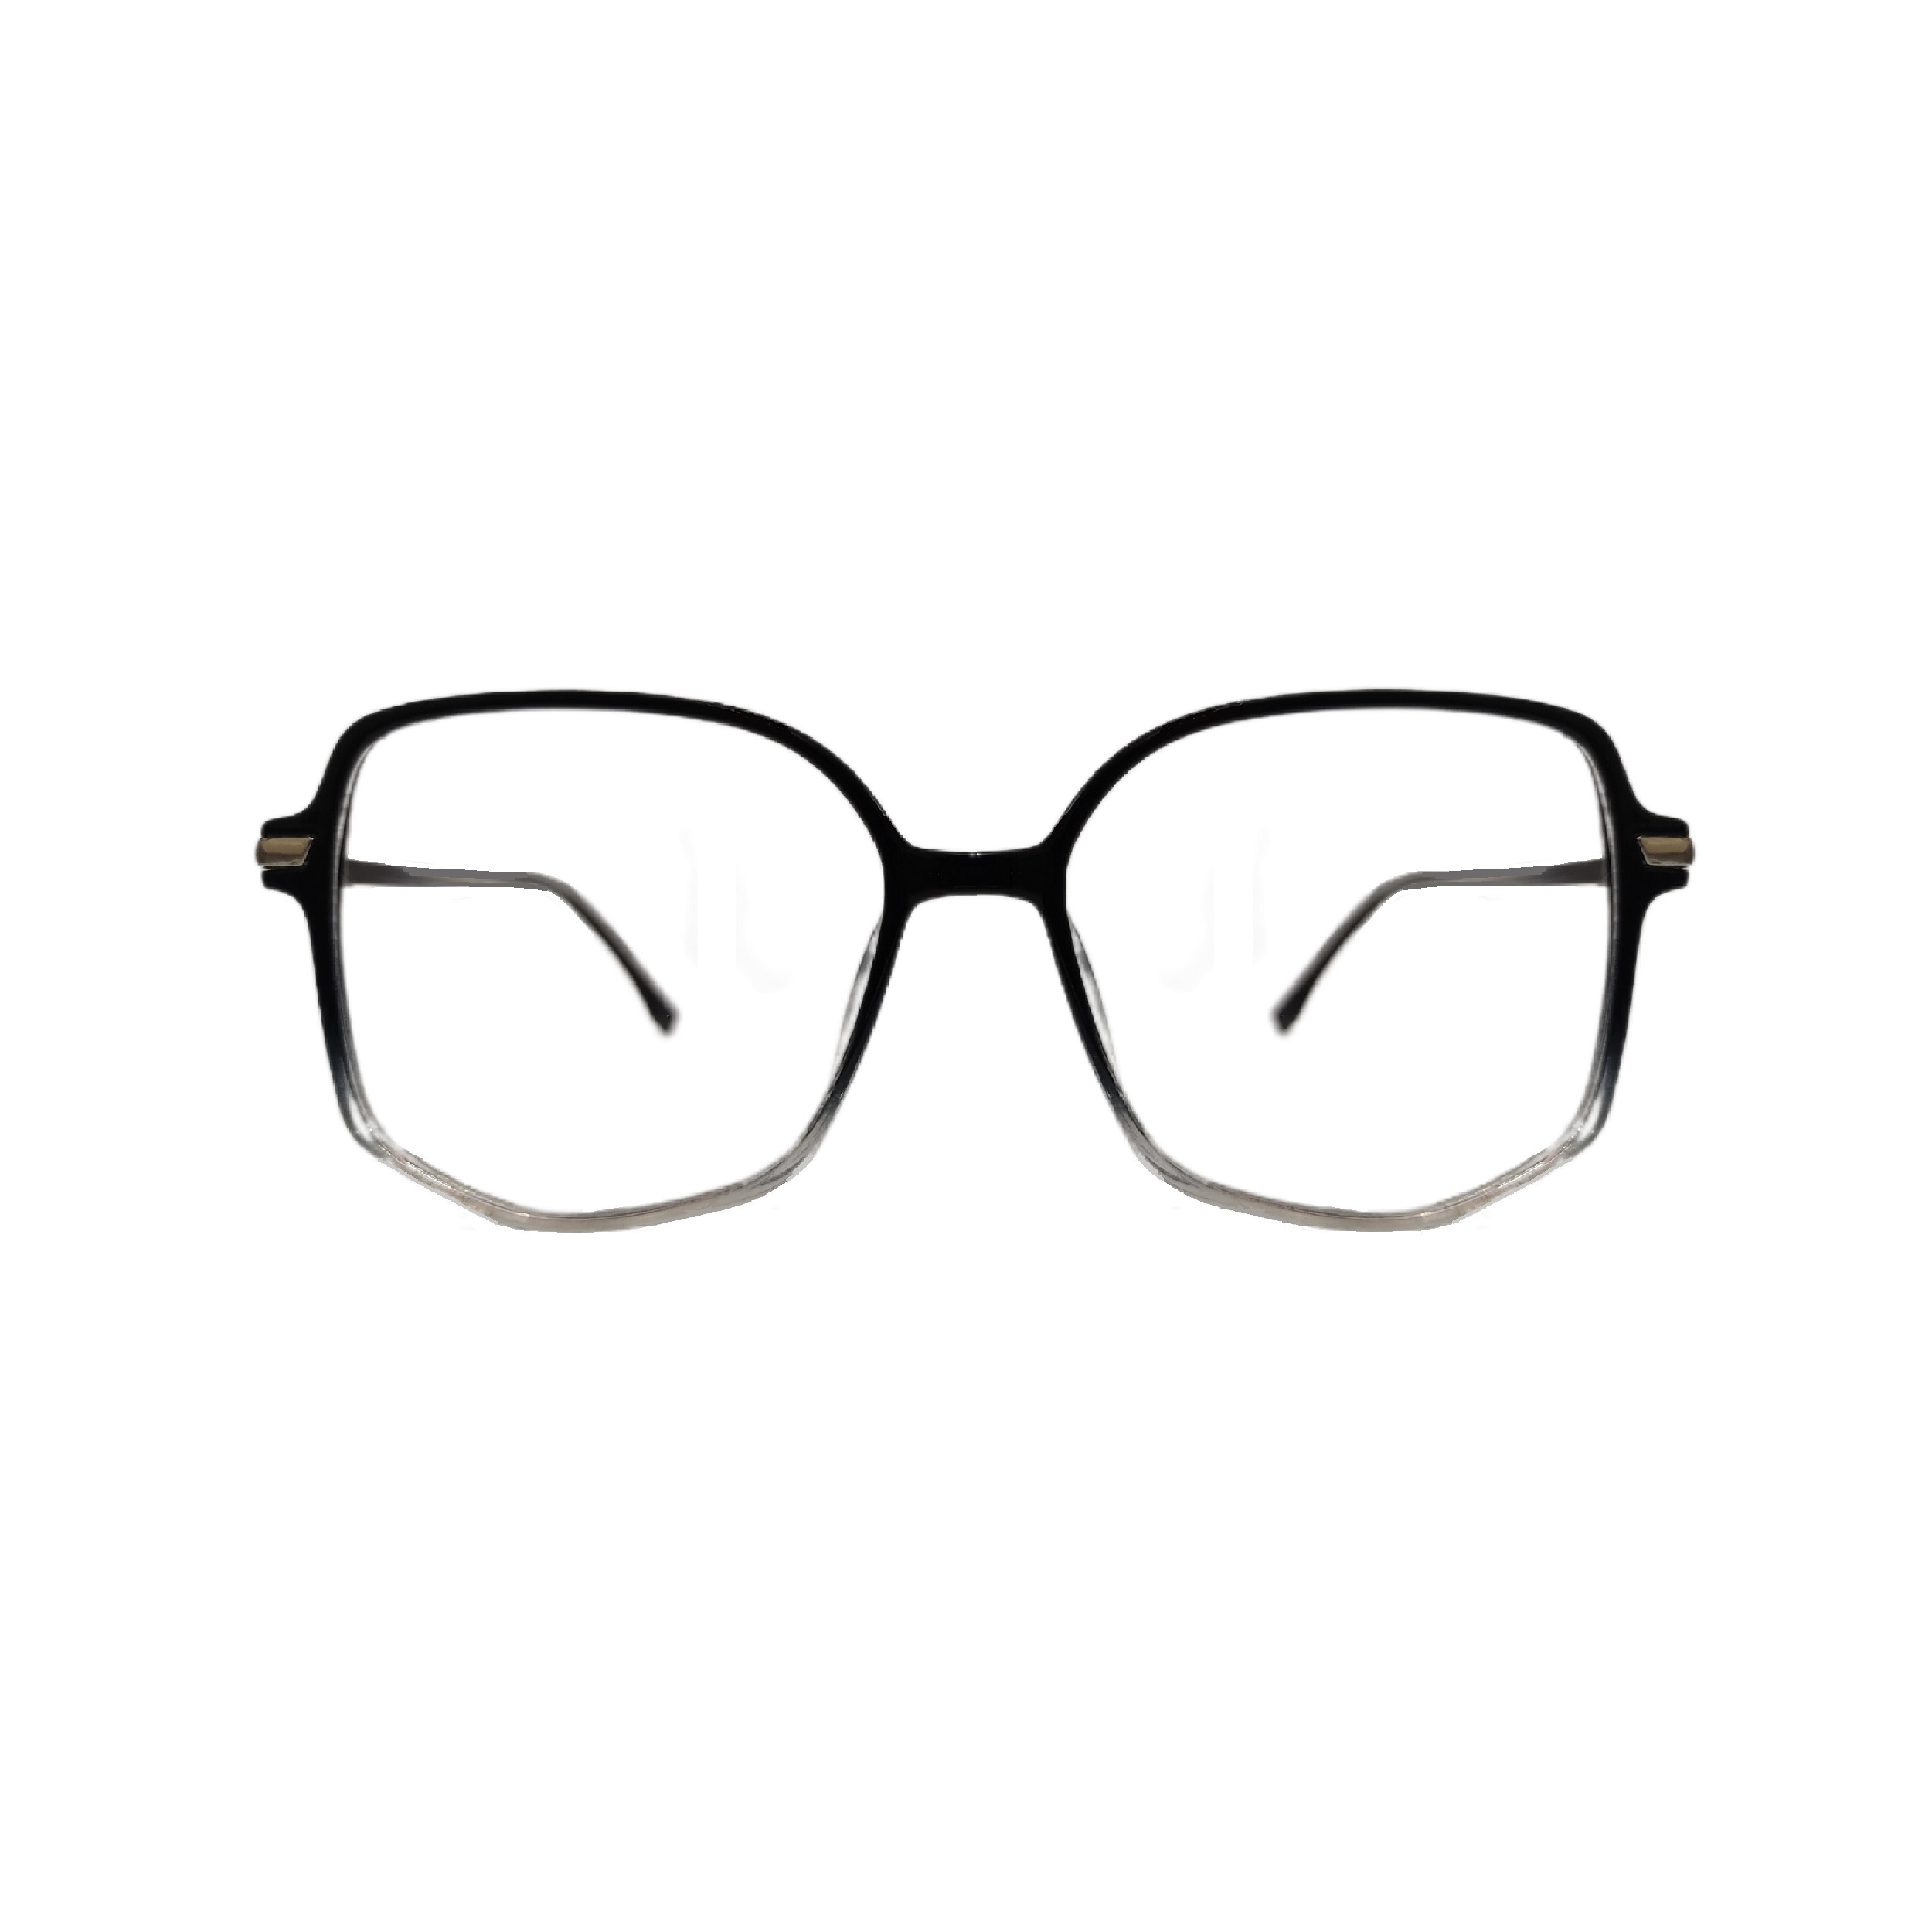 فریم عینک طبی زنانه مدل چند ضلعی فریم شفاف کد 038 UV400